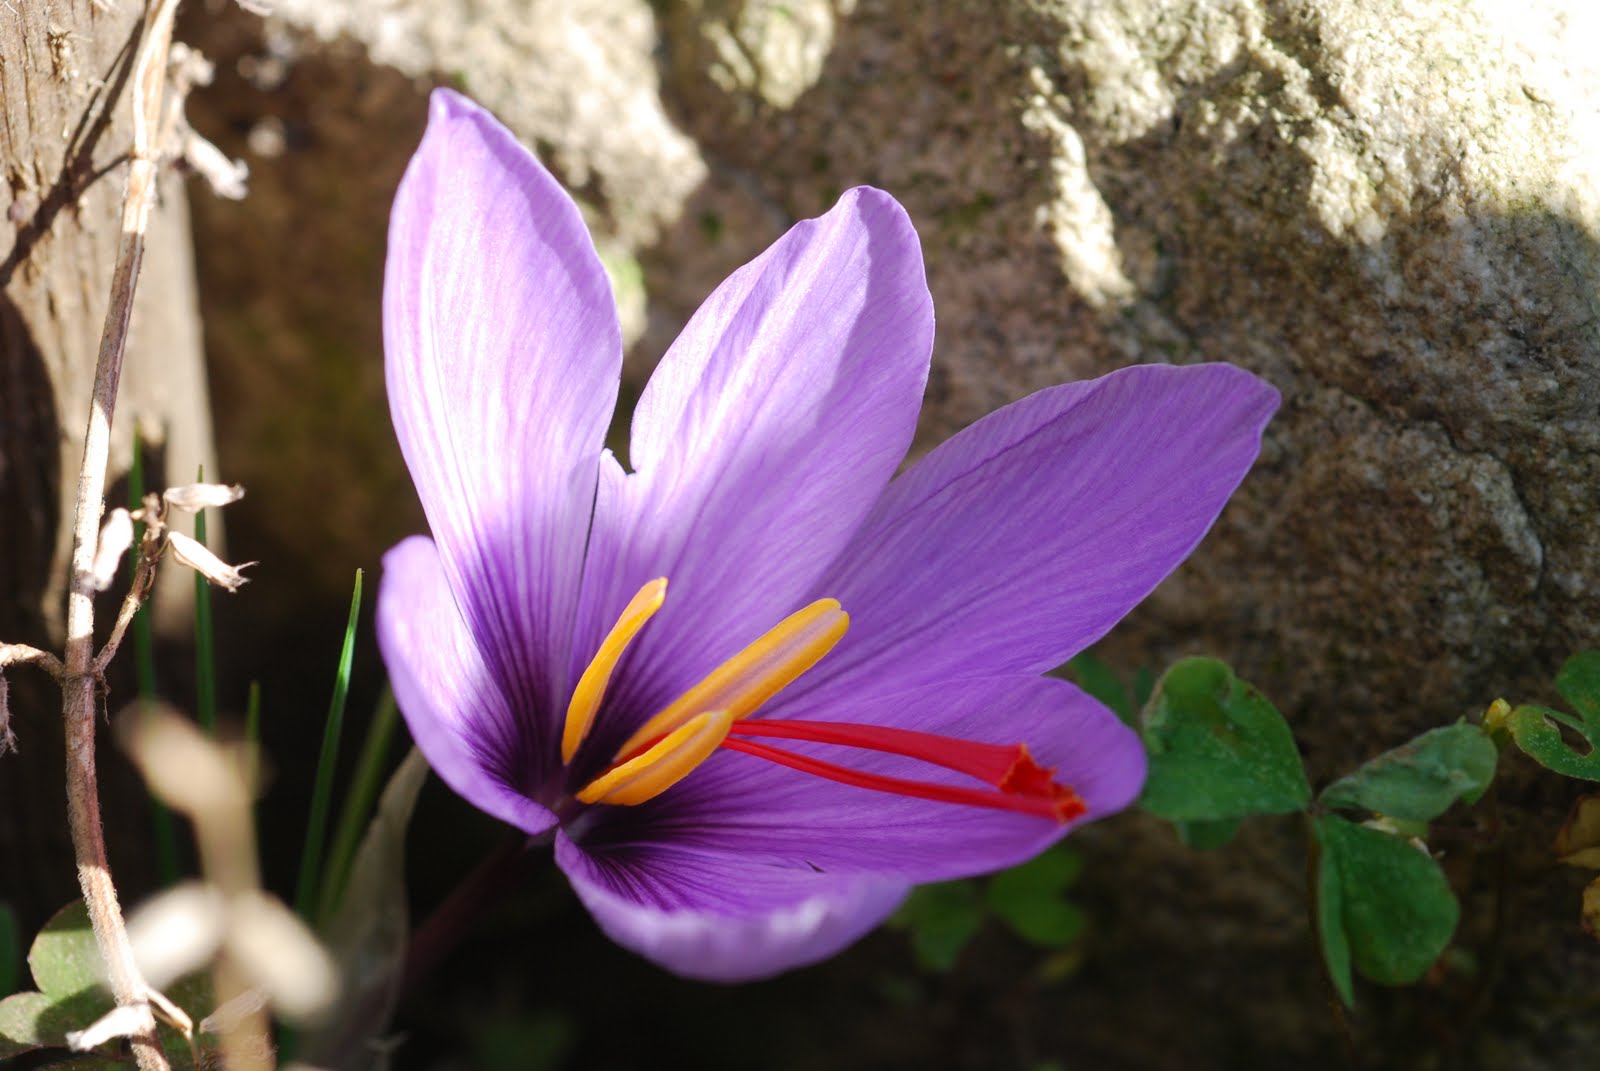 Шафран сканворд. Рокус (Шафран) посевной (Crocus sativus). Крокус шафранный цветок. Крокус сативус Шафран. Крокус Шафран цветок.